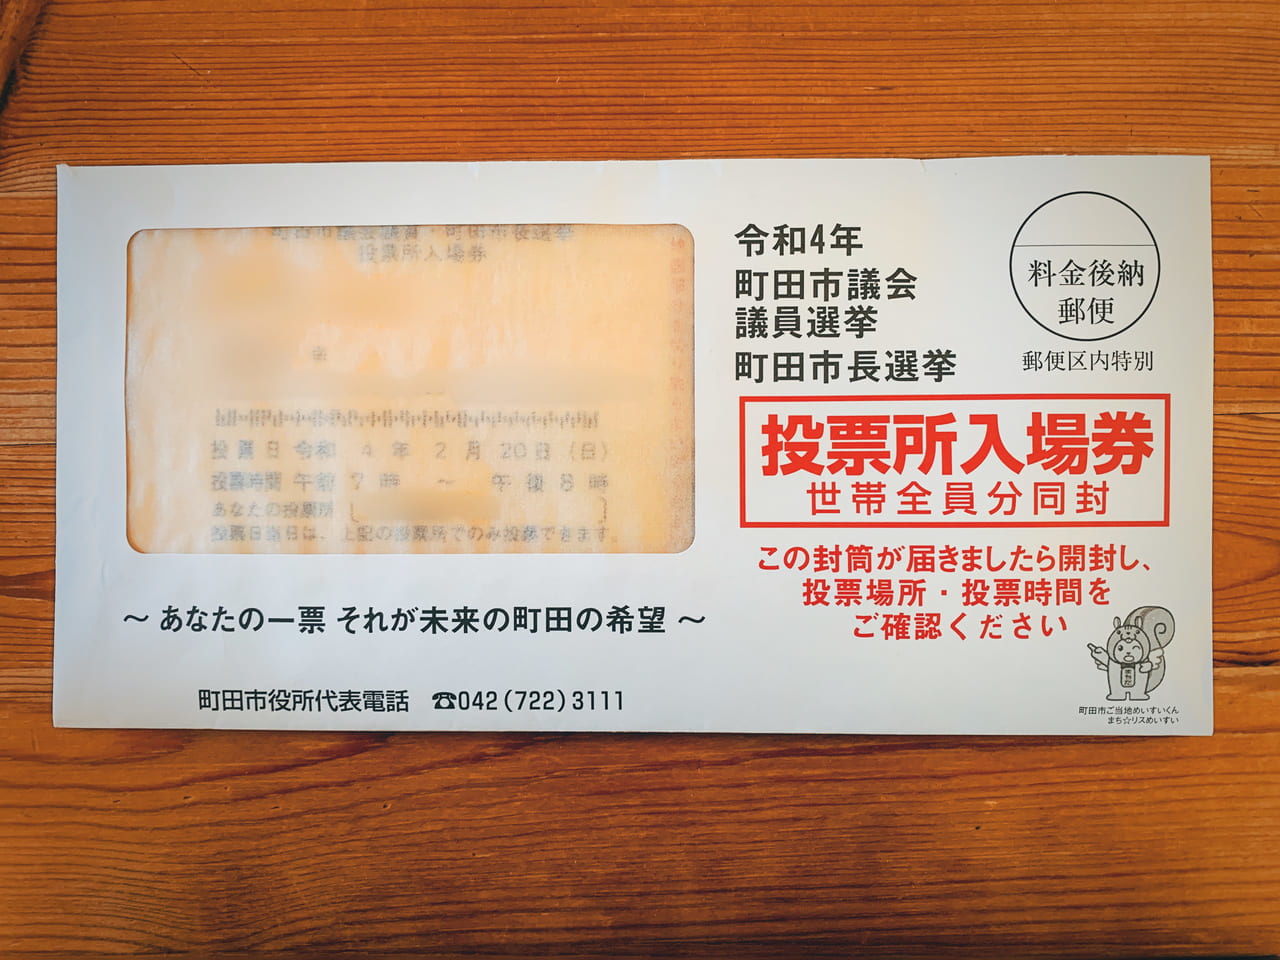 町田市選挙の投票場入場券の表